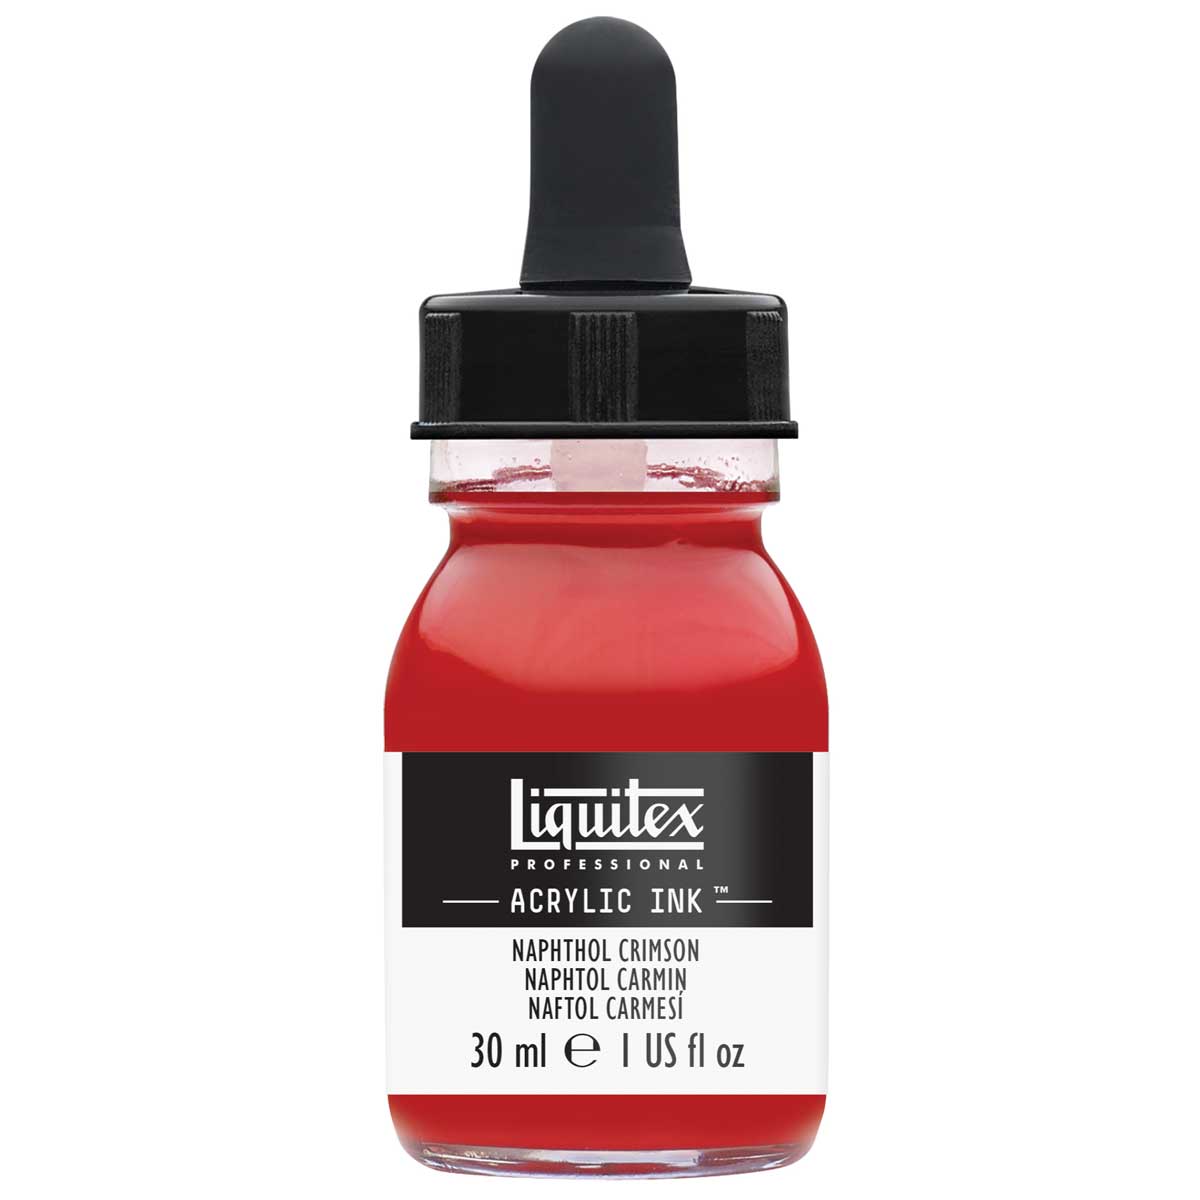 Liquitex Professional Acrylic Ink - Naphthol Crimson 30ml/1oz